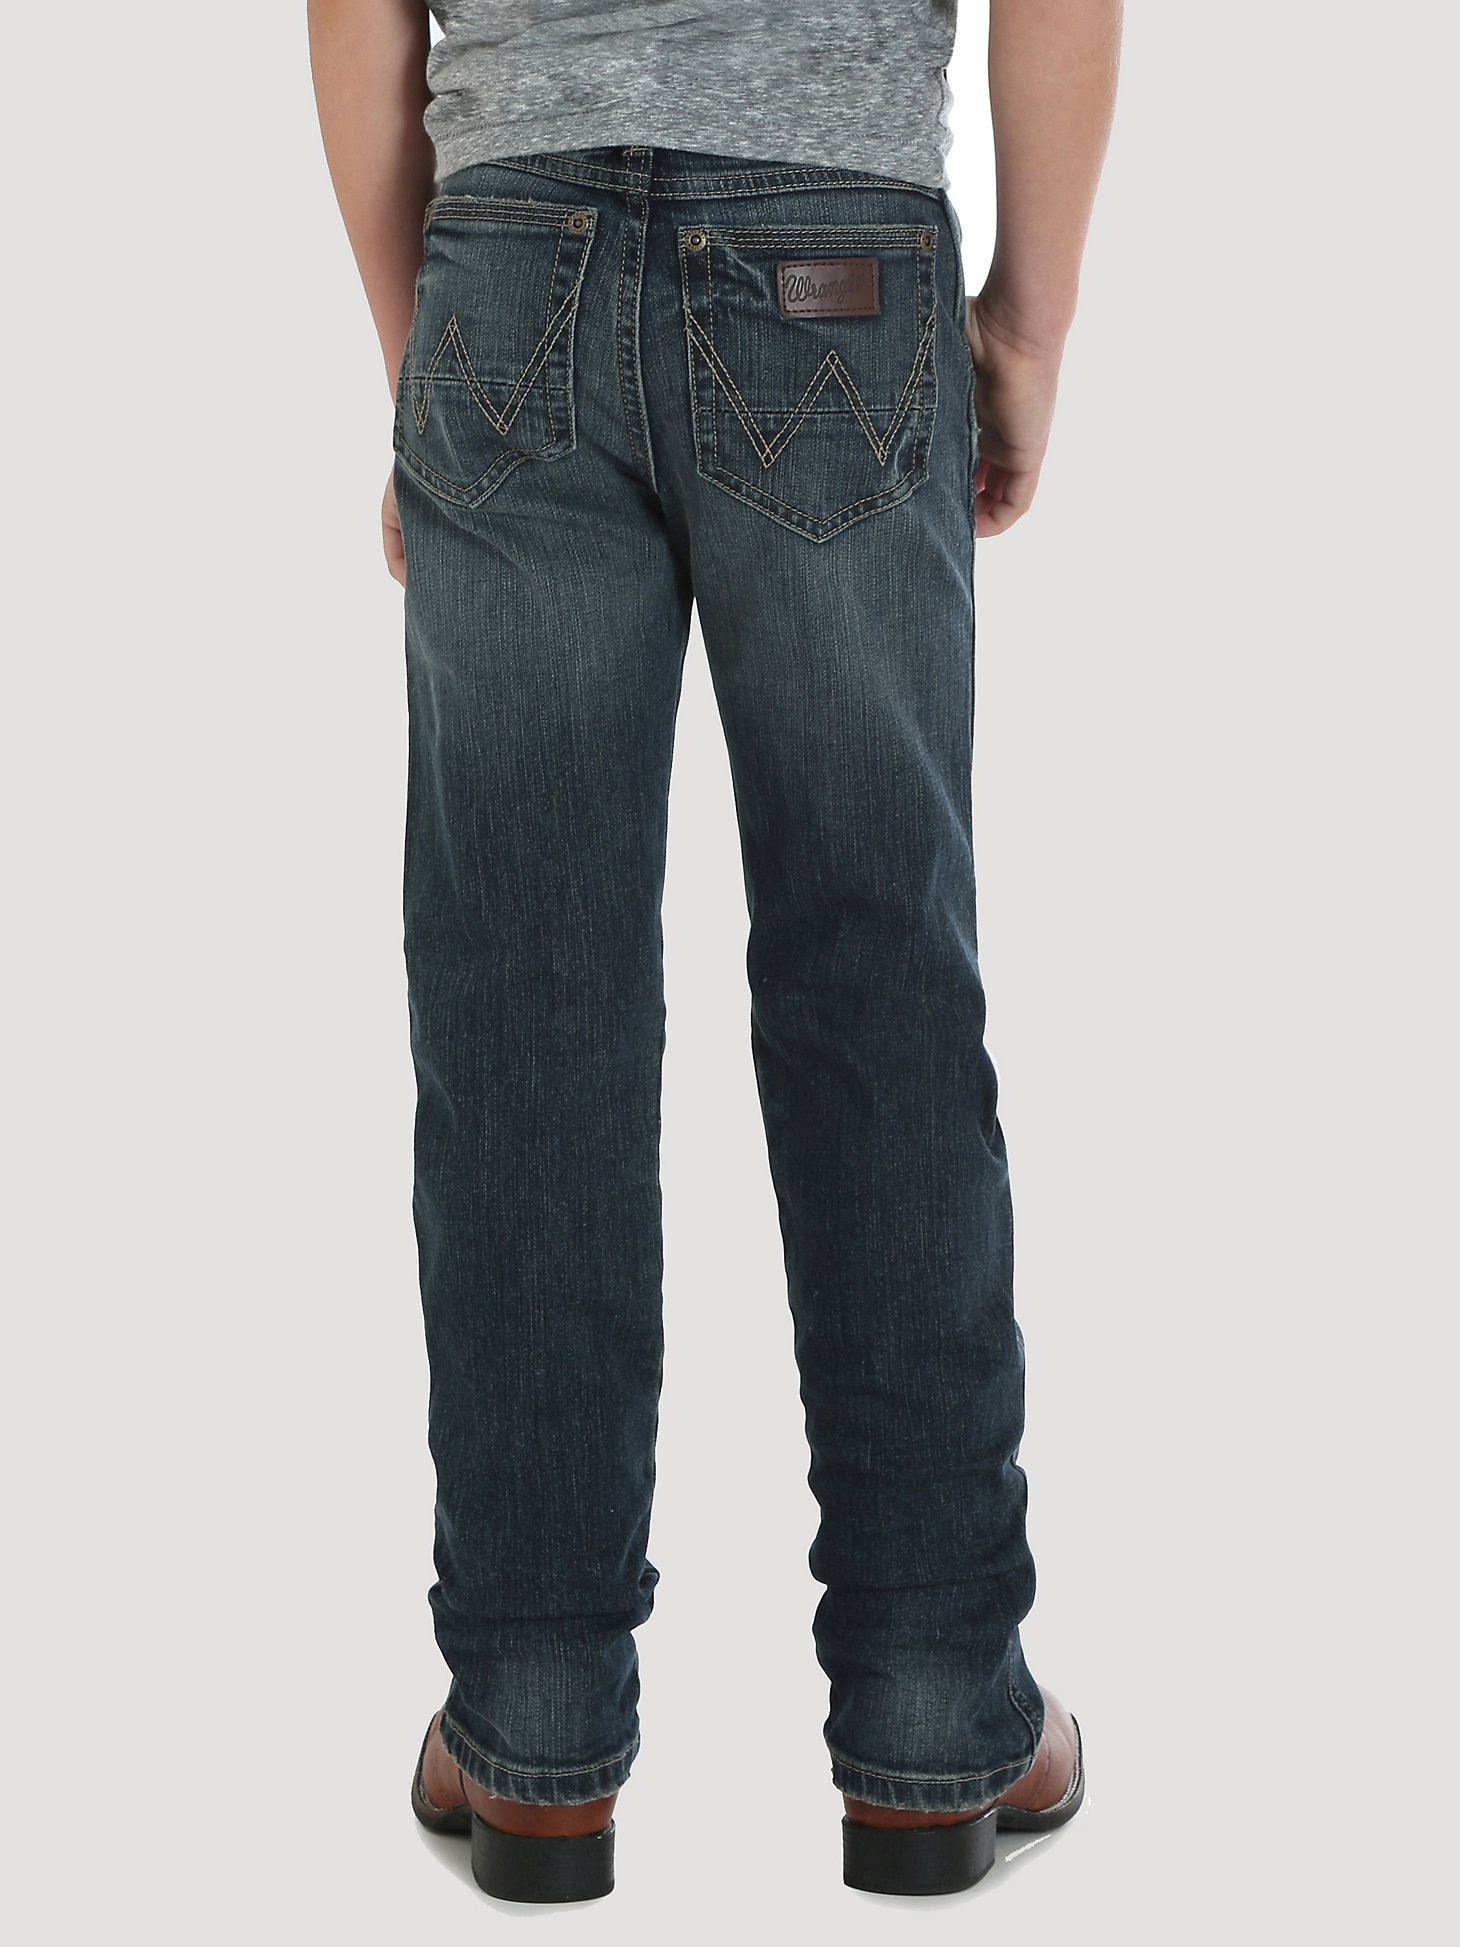 Boy's Wrangler Retro® Slim Straight Jean (8-18) in Jerome alternative view 1